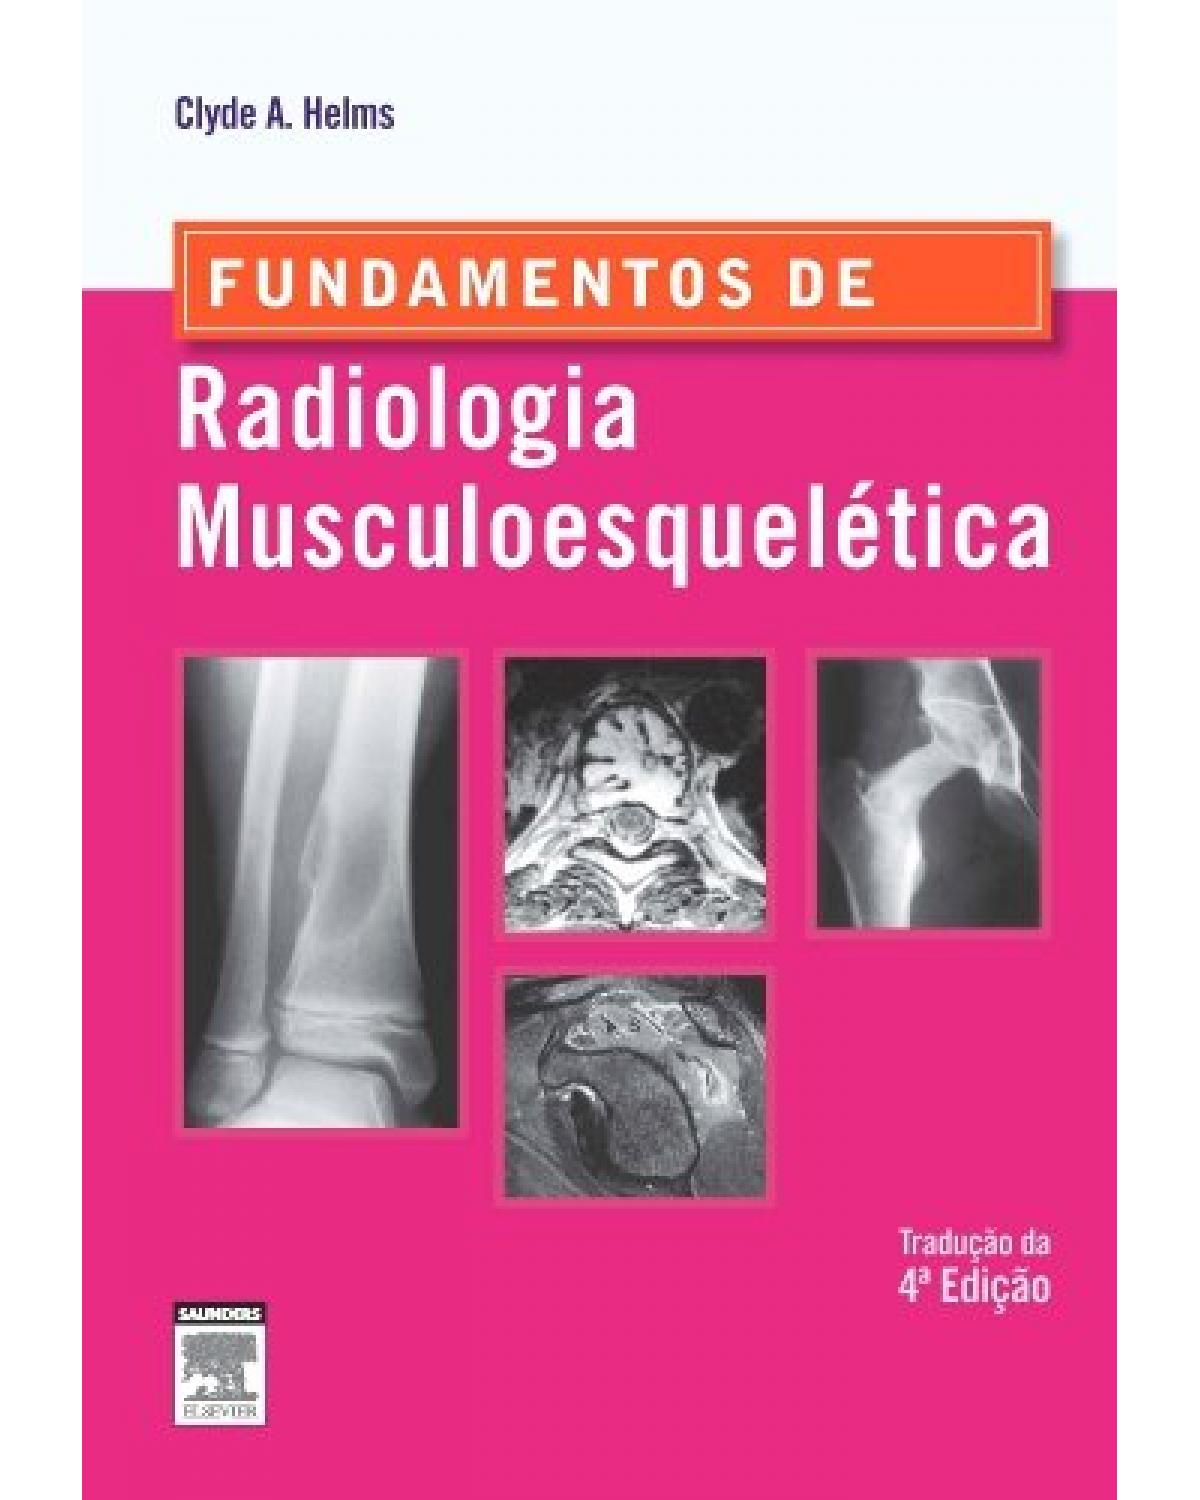 Fundamentos de radiologia musculoesquelética - 4ª Edição | 2015